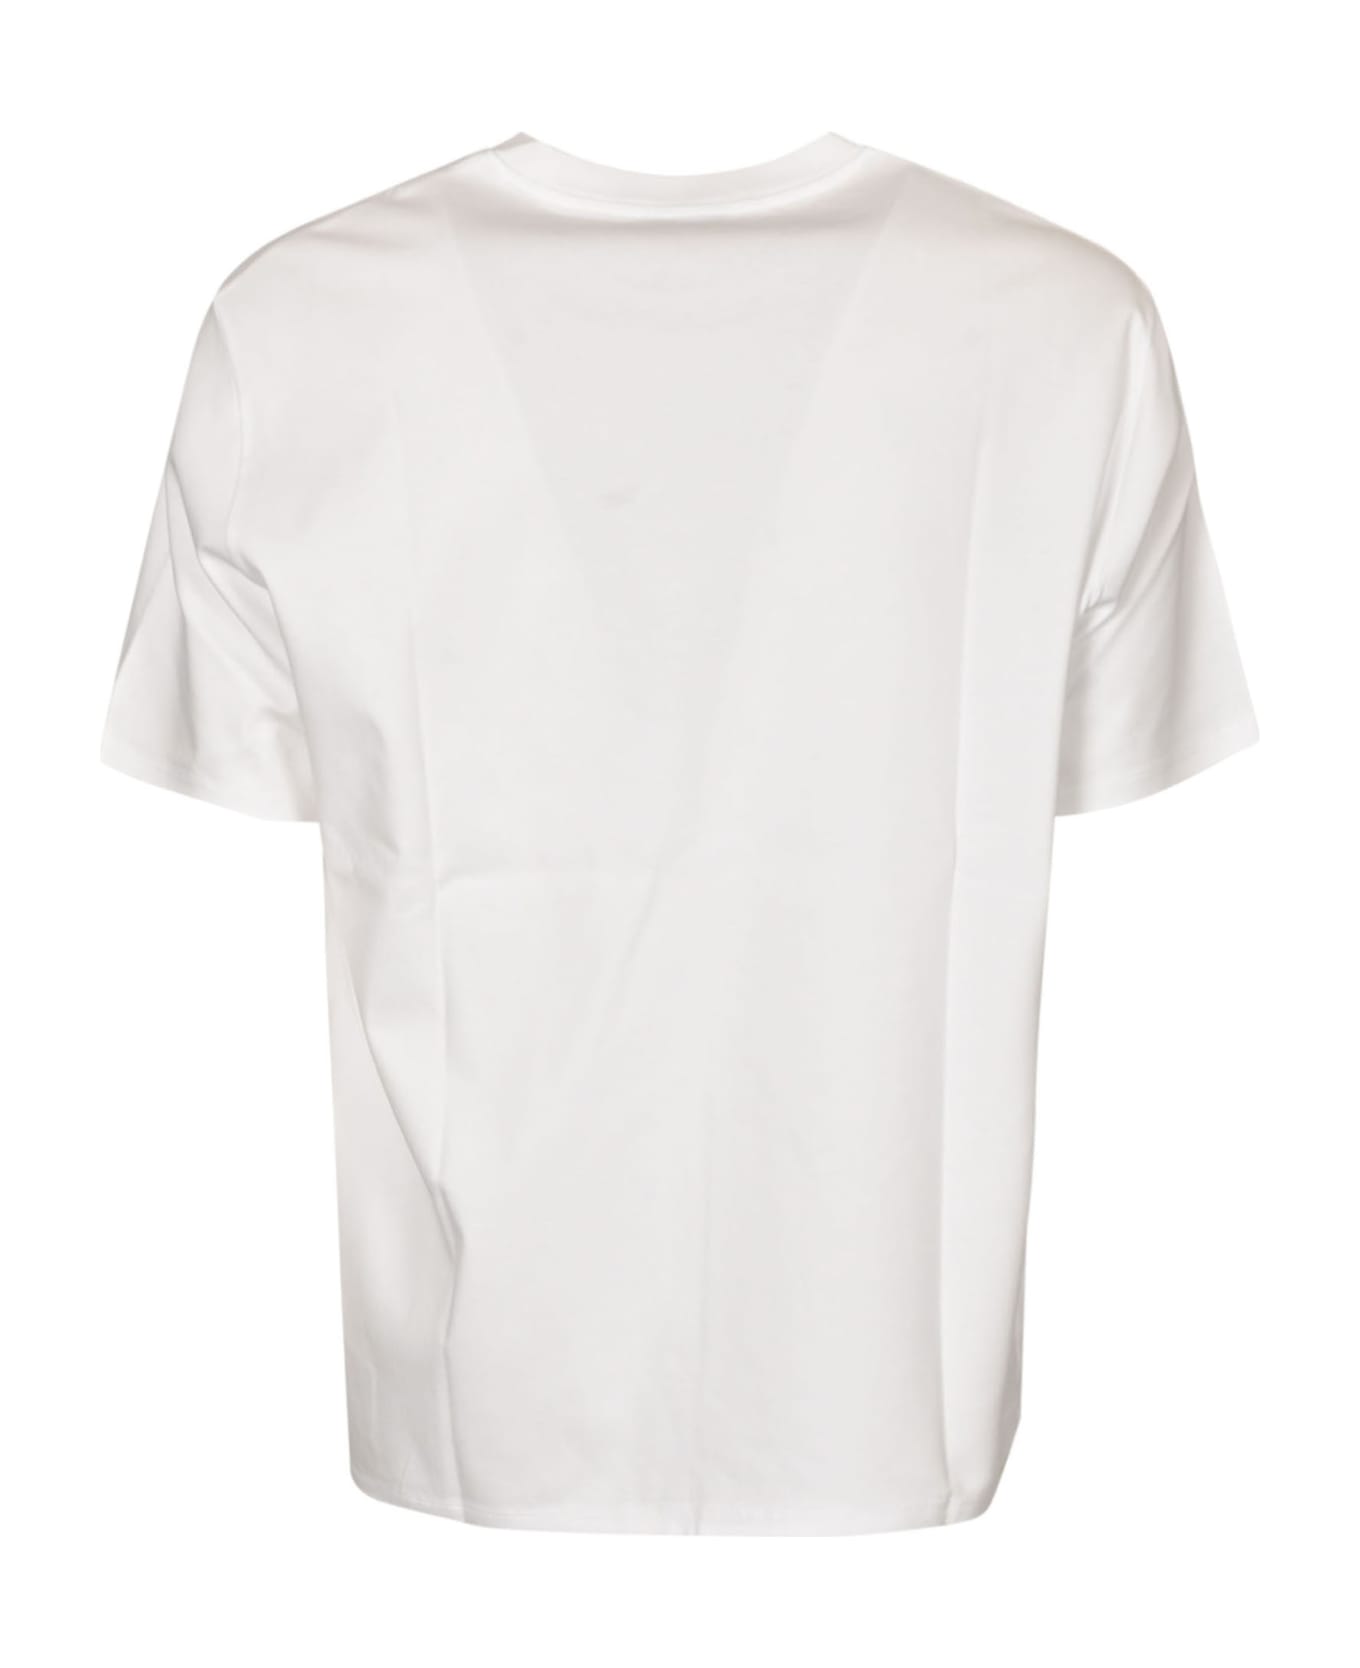 Lanvin Chest Logo Plain T-shirt - White